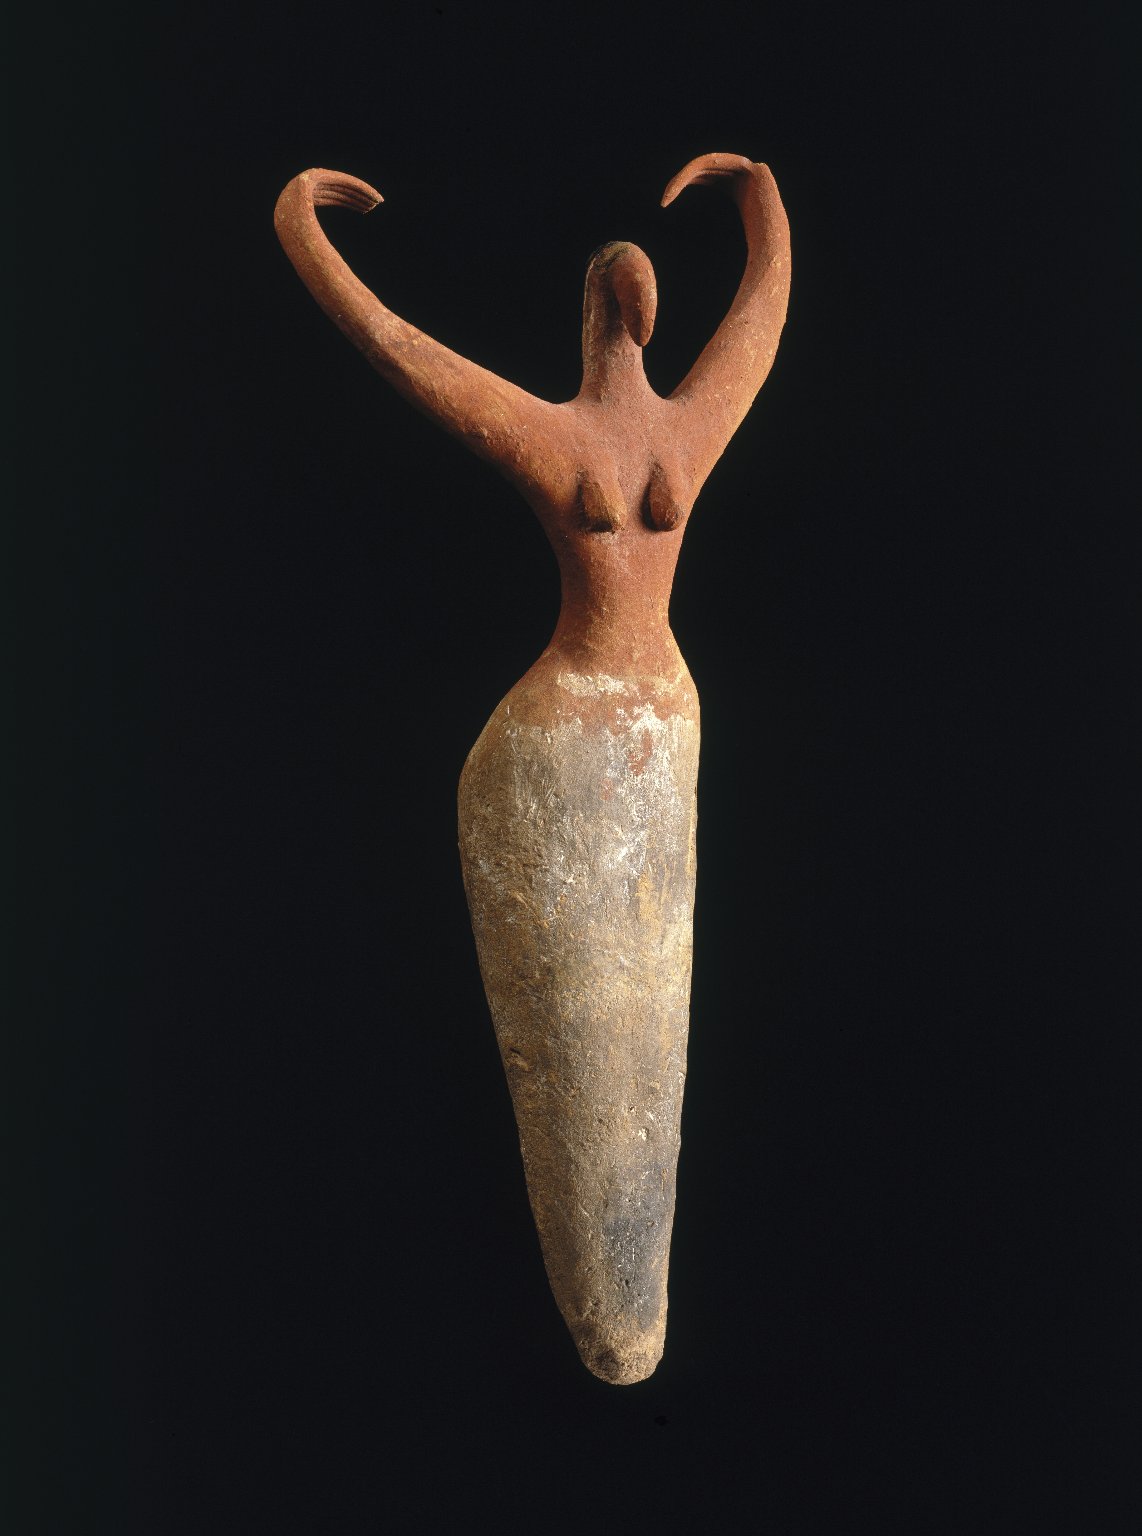 Kadın Figürü (orig. "Female Figure") by Bilinmeyen Sanatçı - M.Ö. 3500-3400 civarı - 29,2 x 14 x 5,7 cm 